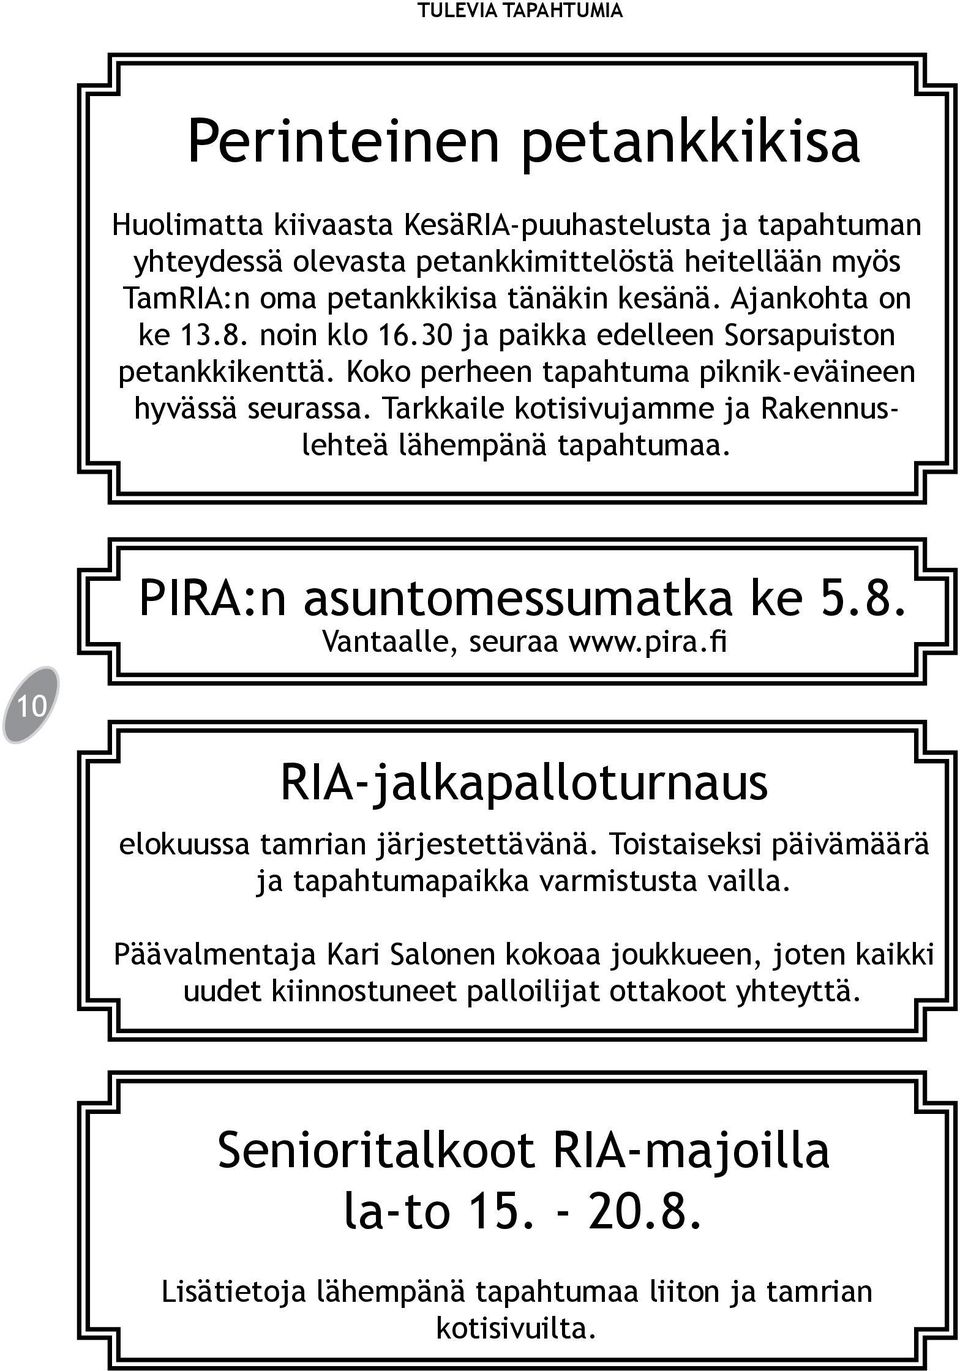 Tarkkaile kotisivujamme ja Rakennuslehteä lähempänä tapahtumaa. PIRA:n asuntomessumatka ke 5.8. Vantaalle, seuraa www.pira.fi 10 RIA-jalkapalloturnaus elokuussa tamrian järjestettävänä.